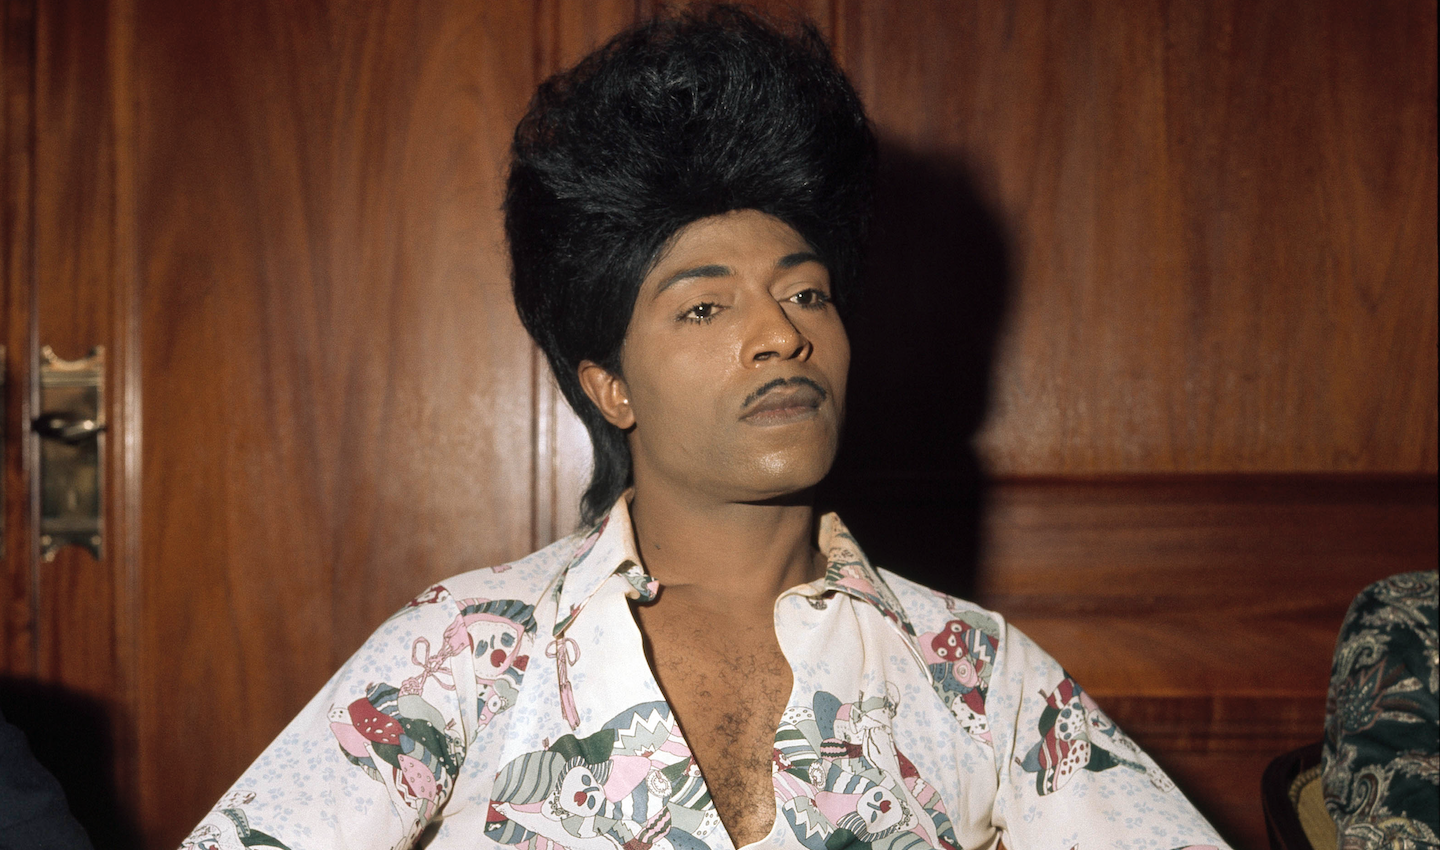 Kleurenfoto van muzikant Little Richard. Hij draagt zijn zwarte haar hoog opgestoken in pompadour-stijl. Hij heeft een witte blouse aan met grijs-roze design en kijkt geconcentreerd naar rechts. Hij zit voor een houtbruine kast..